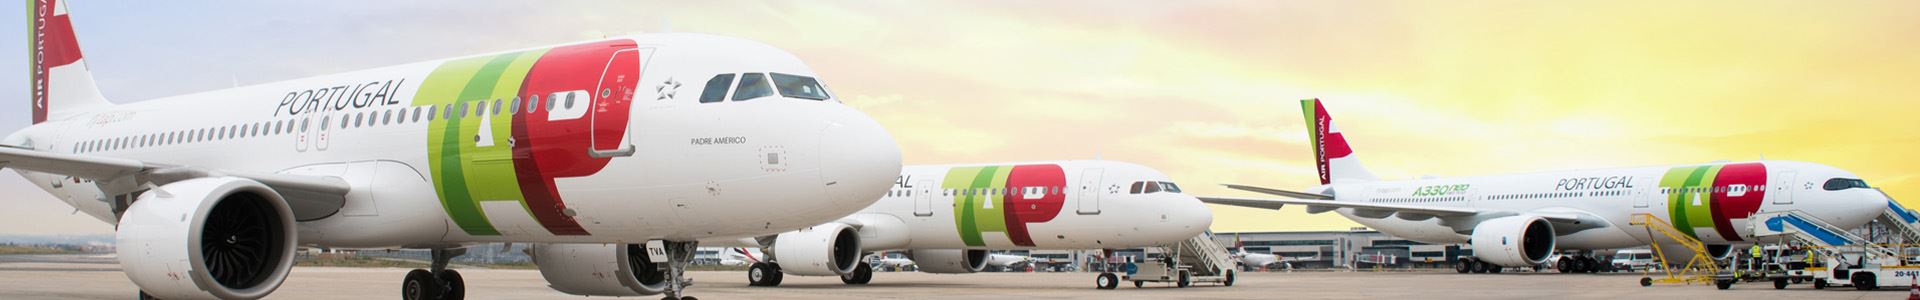 Photographie montrant trois avions disposés côte à côte, décorés avec les couleurs et le logo de TAP Air Portugal.